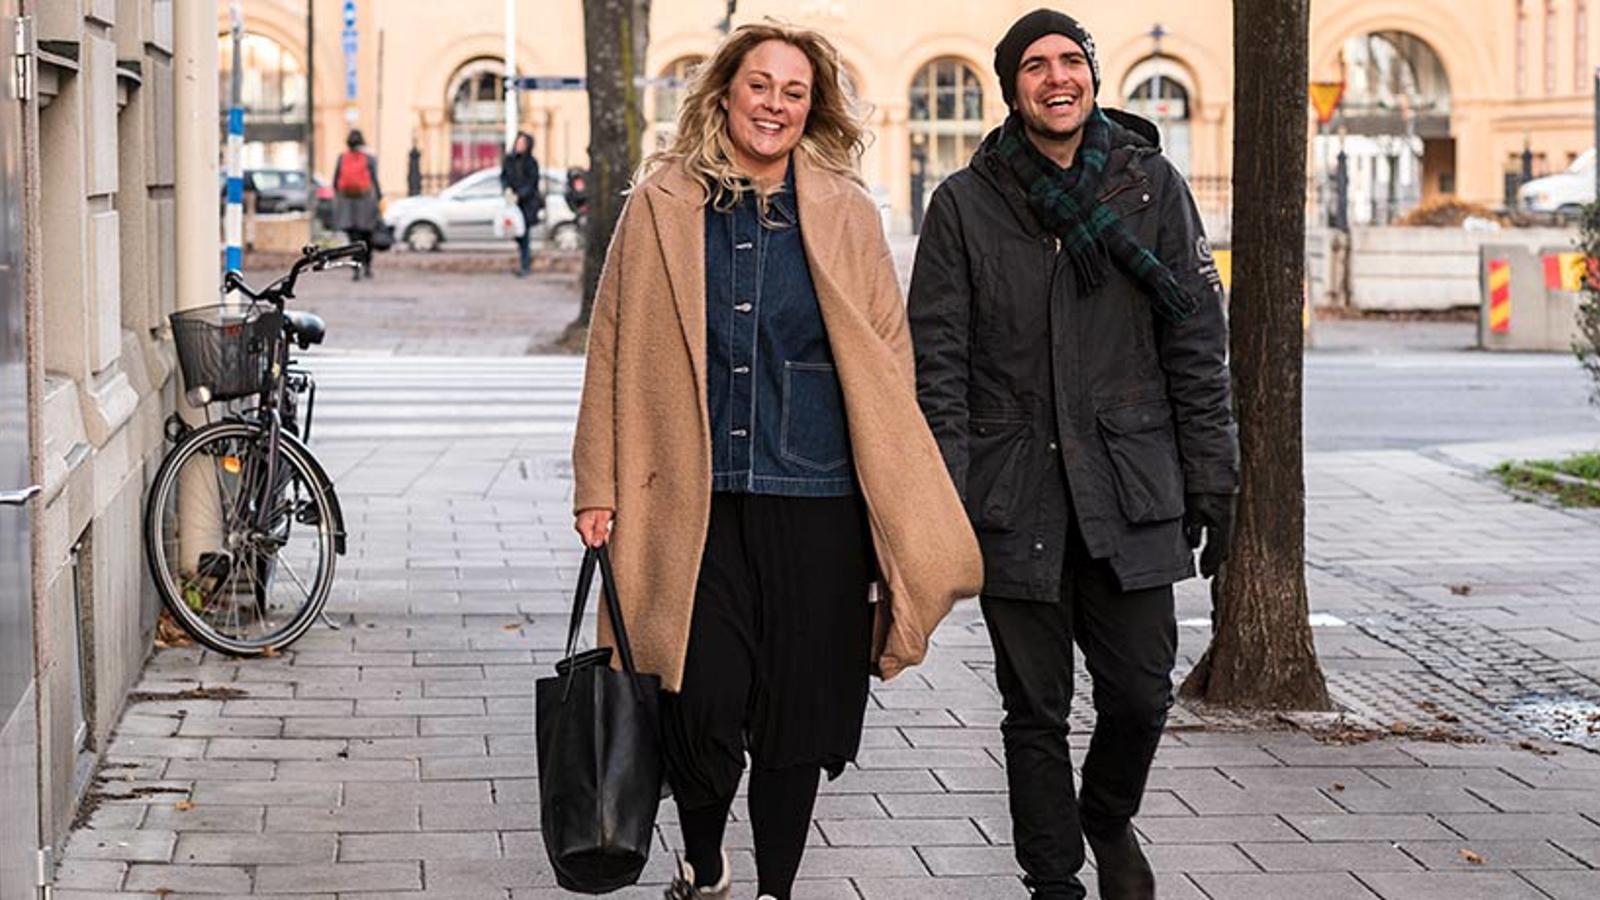 Johanna Lindhult och Christian Edlund som är ansvariga för projektet Starta om. De går på en gata och tittar in i kameran.